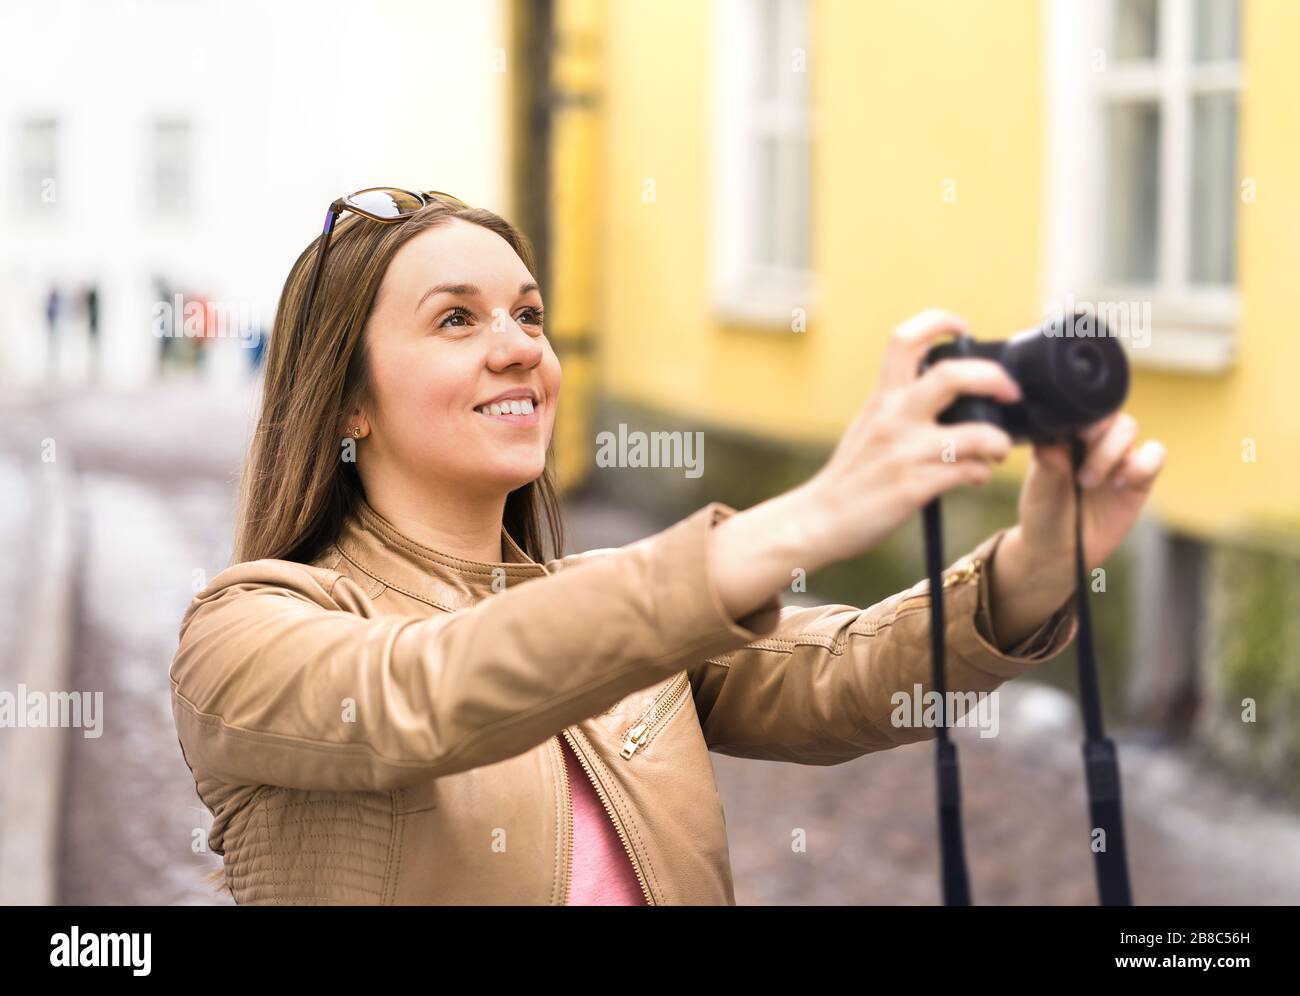 Glückliche Frau, die mit der Kamera fotografieren kann. Touristen im Urlaub  in der City Street. Urlaubsbilder. Lächelnder Fotograf oder Hobbyfotograf  Stockfotografie - Alamy